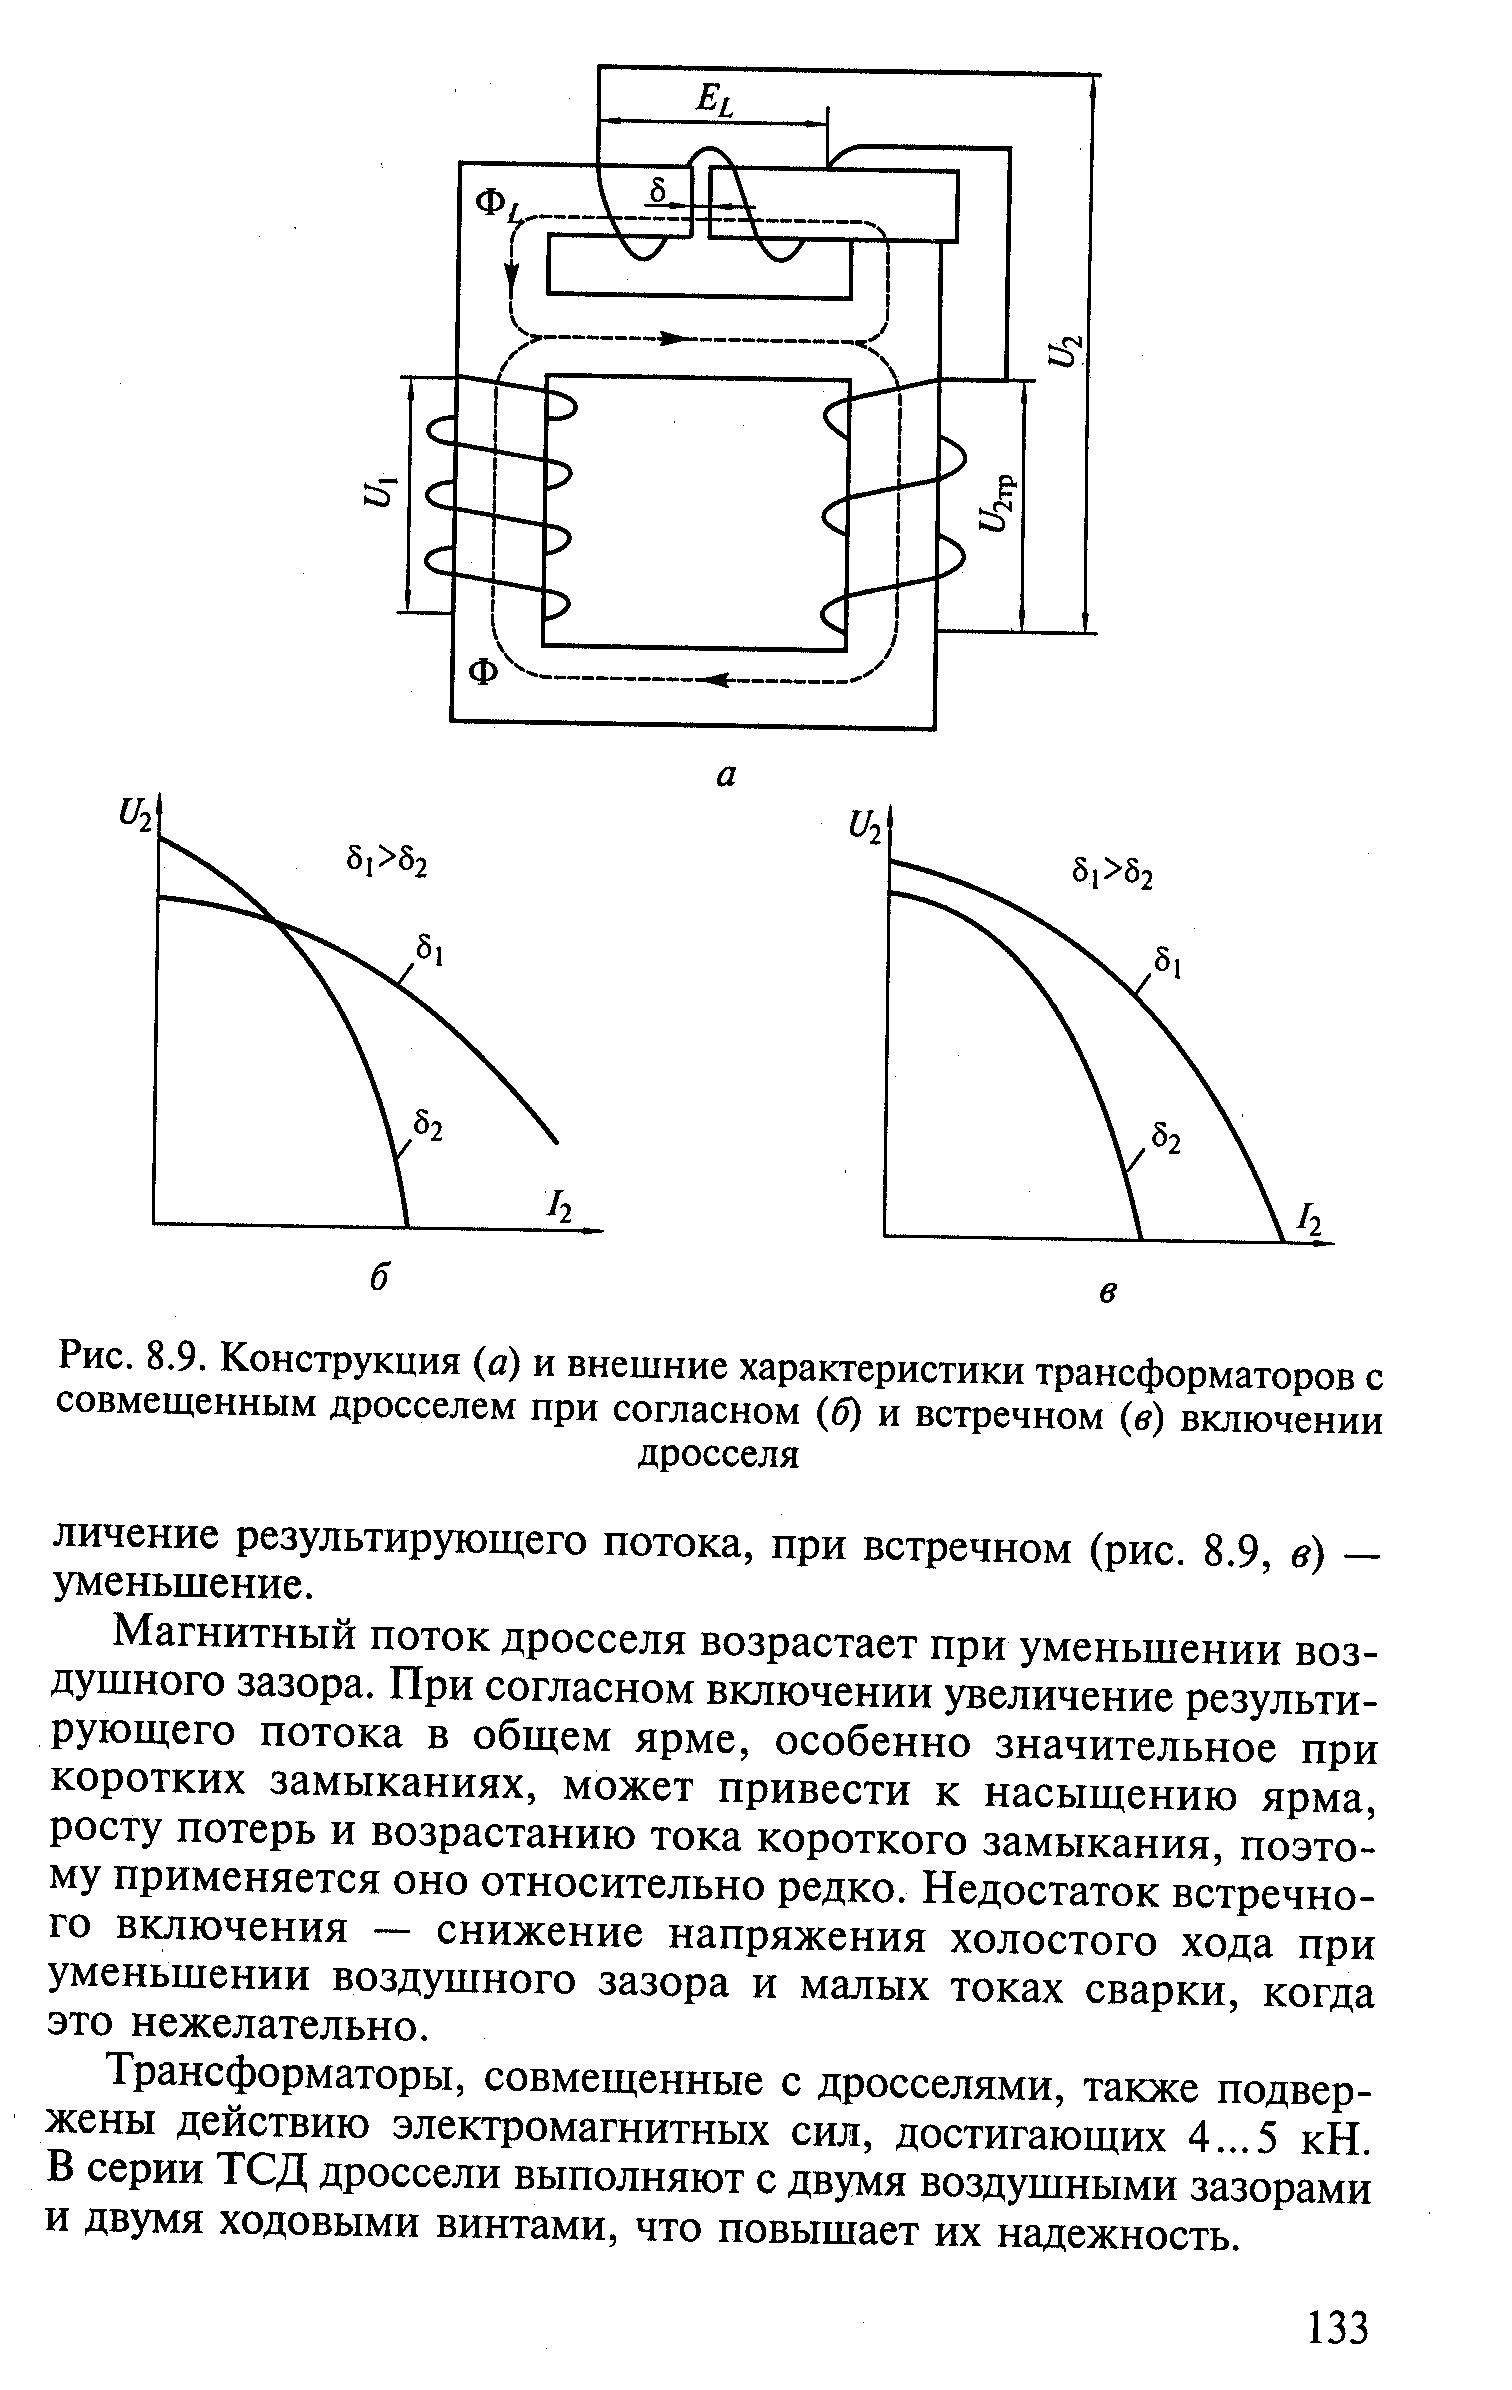 Рис. 8.9. Конструкция (й) и внешние характеристики трансформаторов с совмешенным дросселем при согласном (б) и встречном (в) включении
